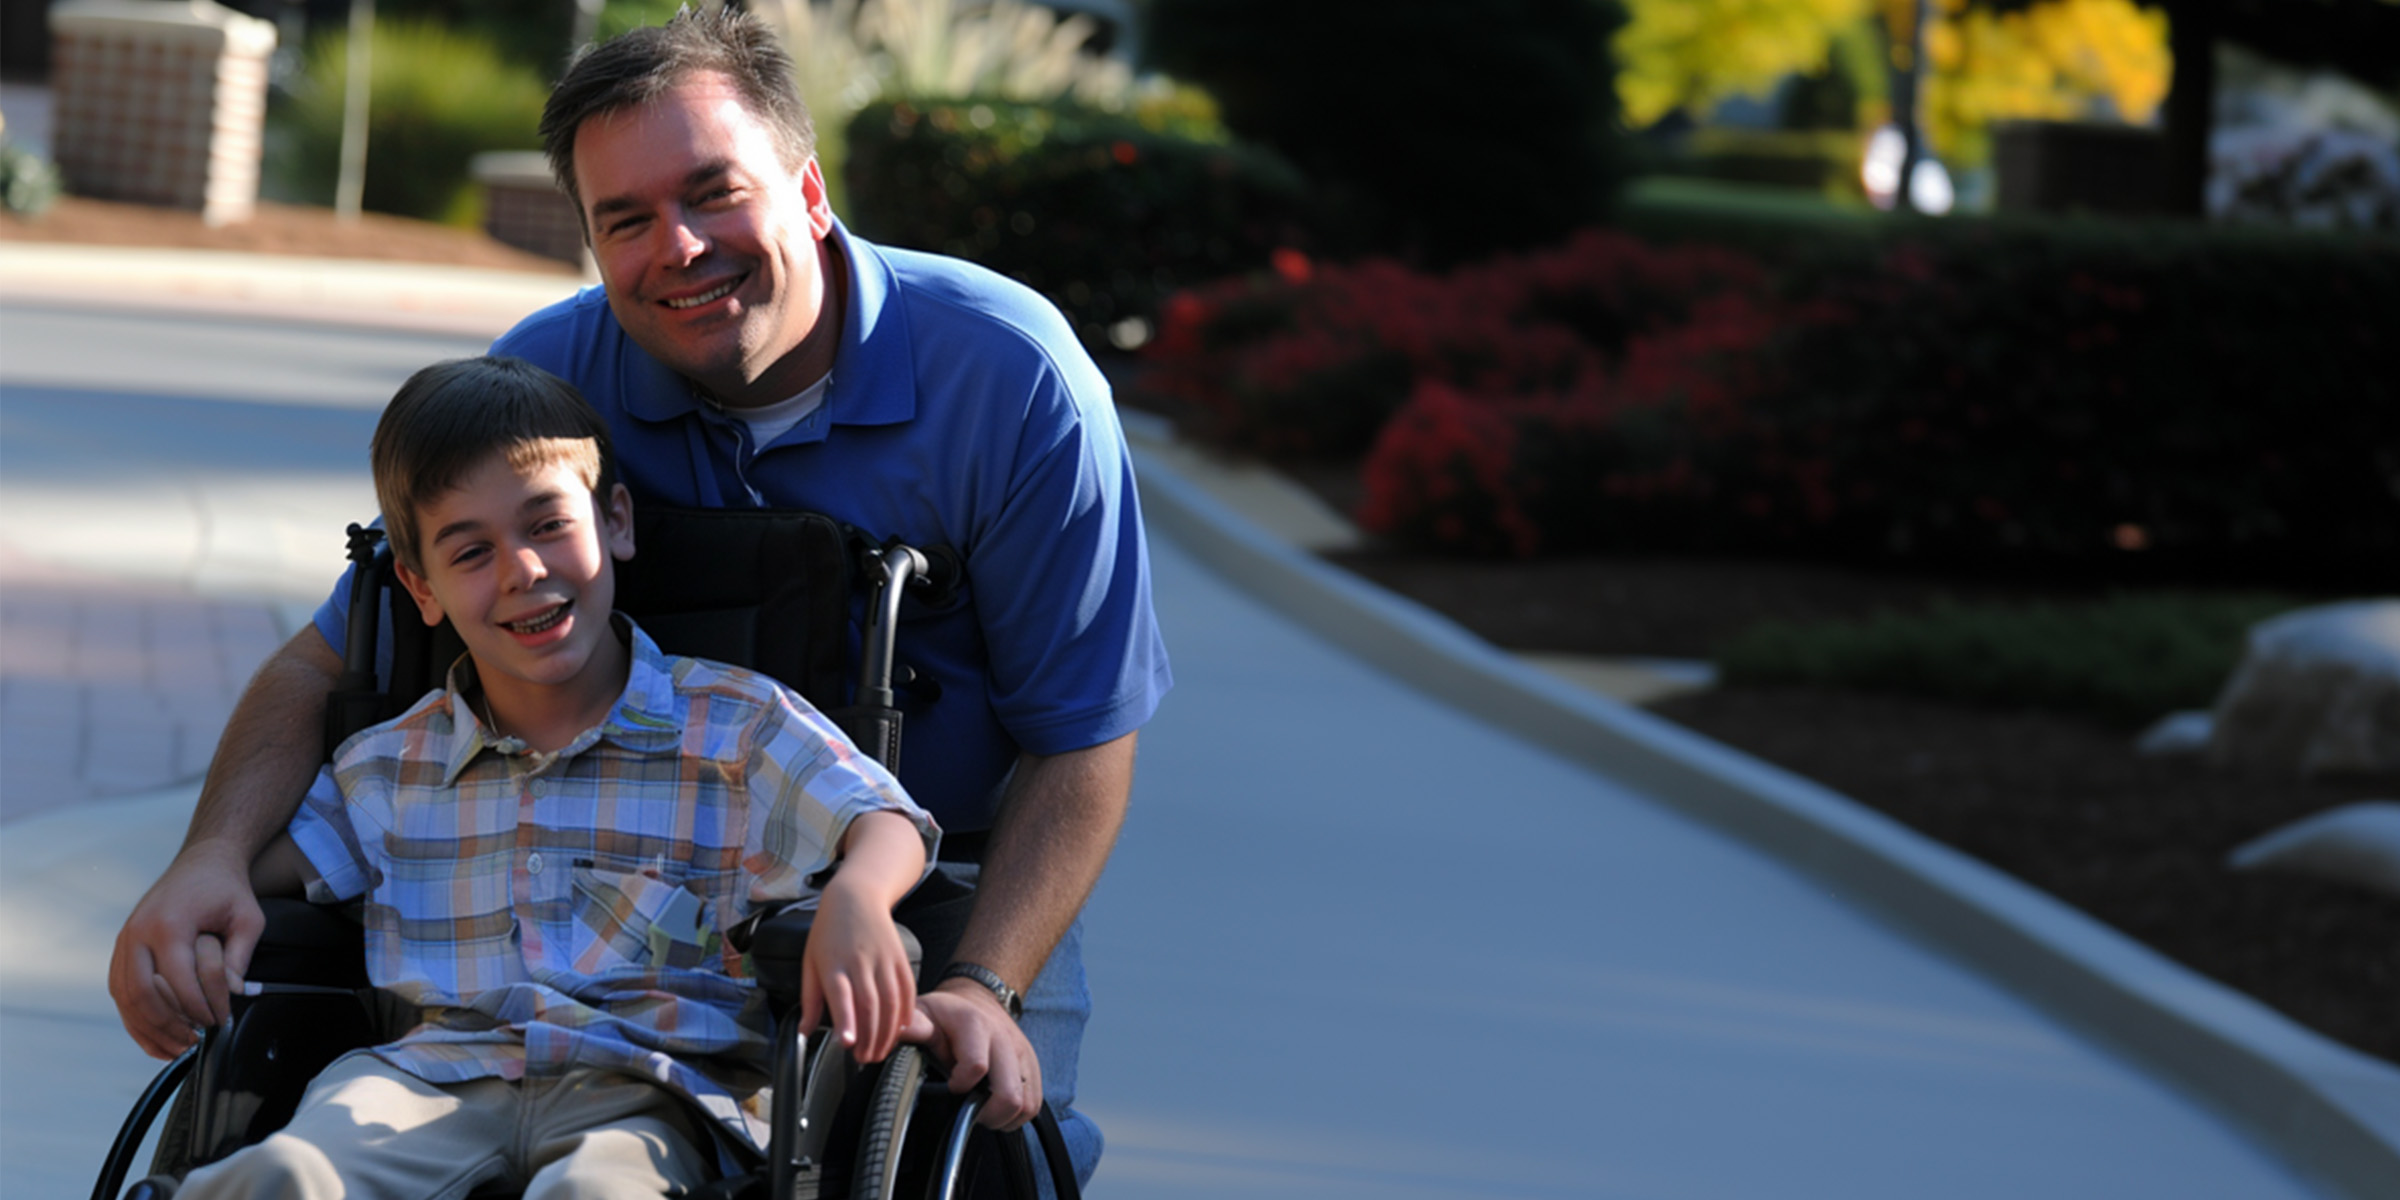 Un homme accompagnant un garçon en fauteuil roulant | Source : Amomama